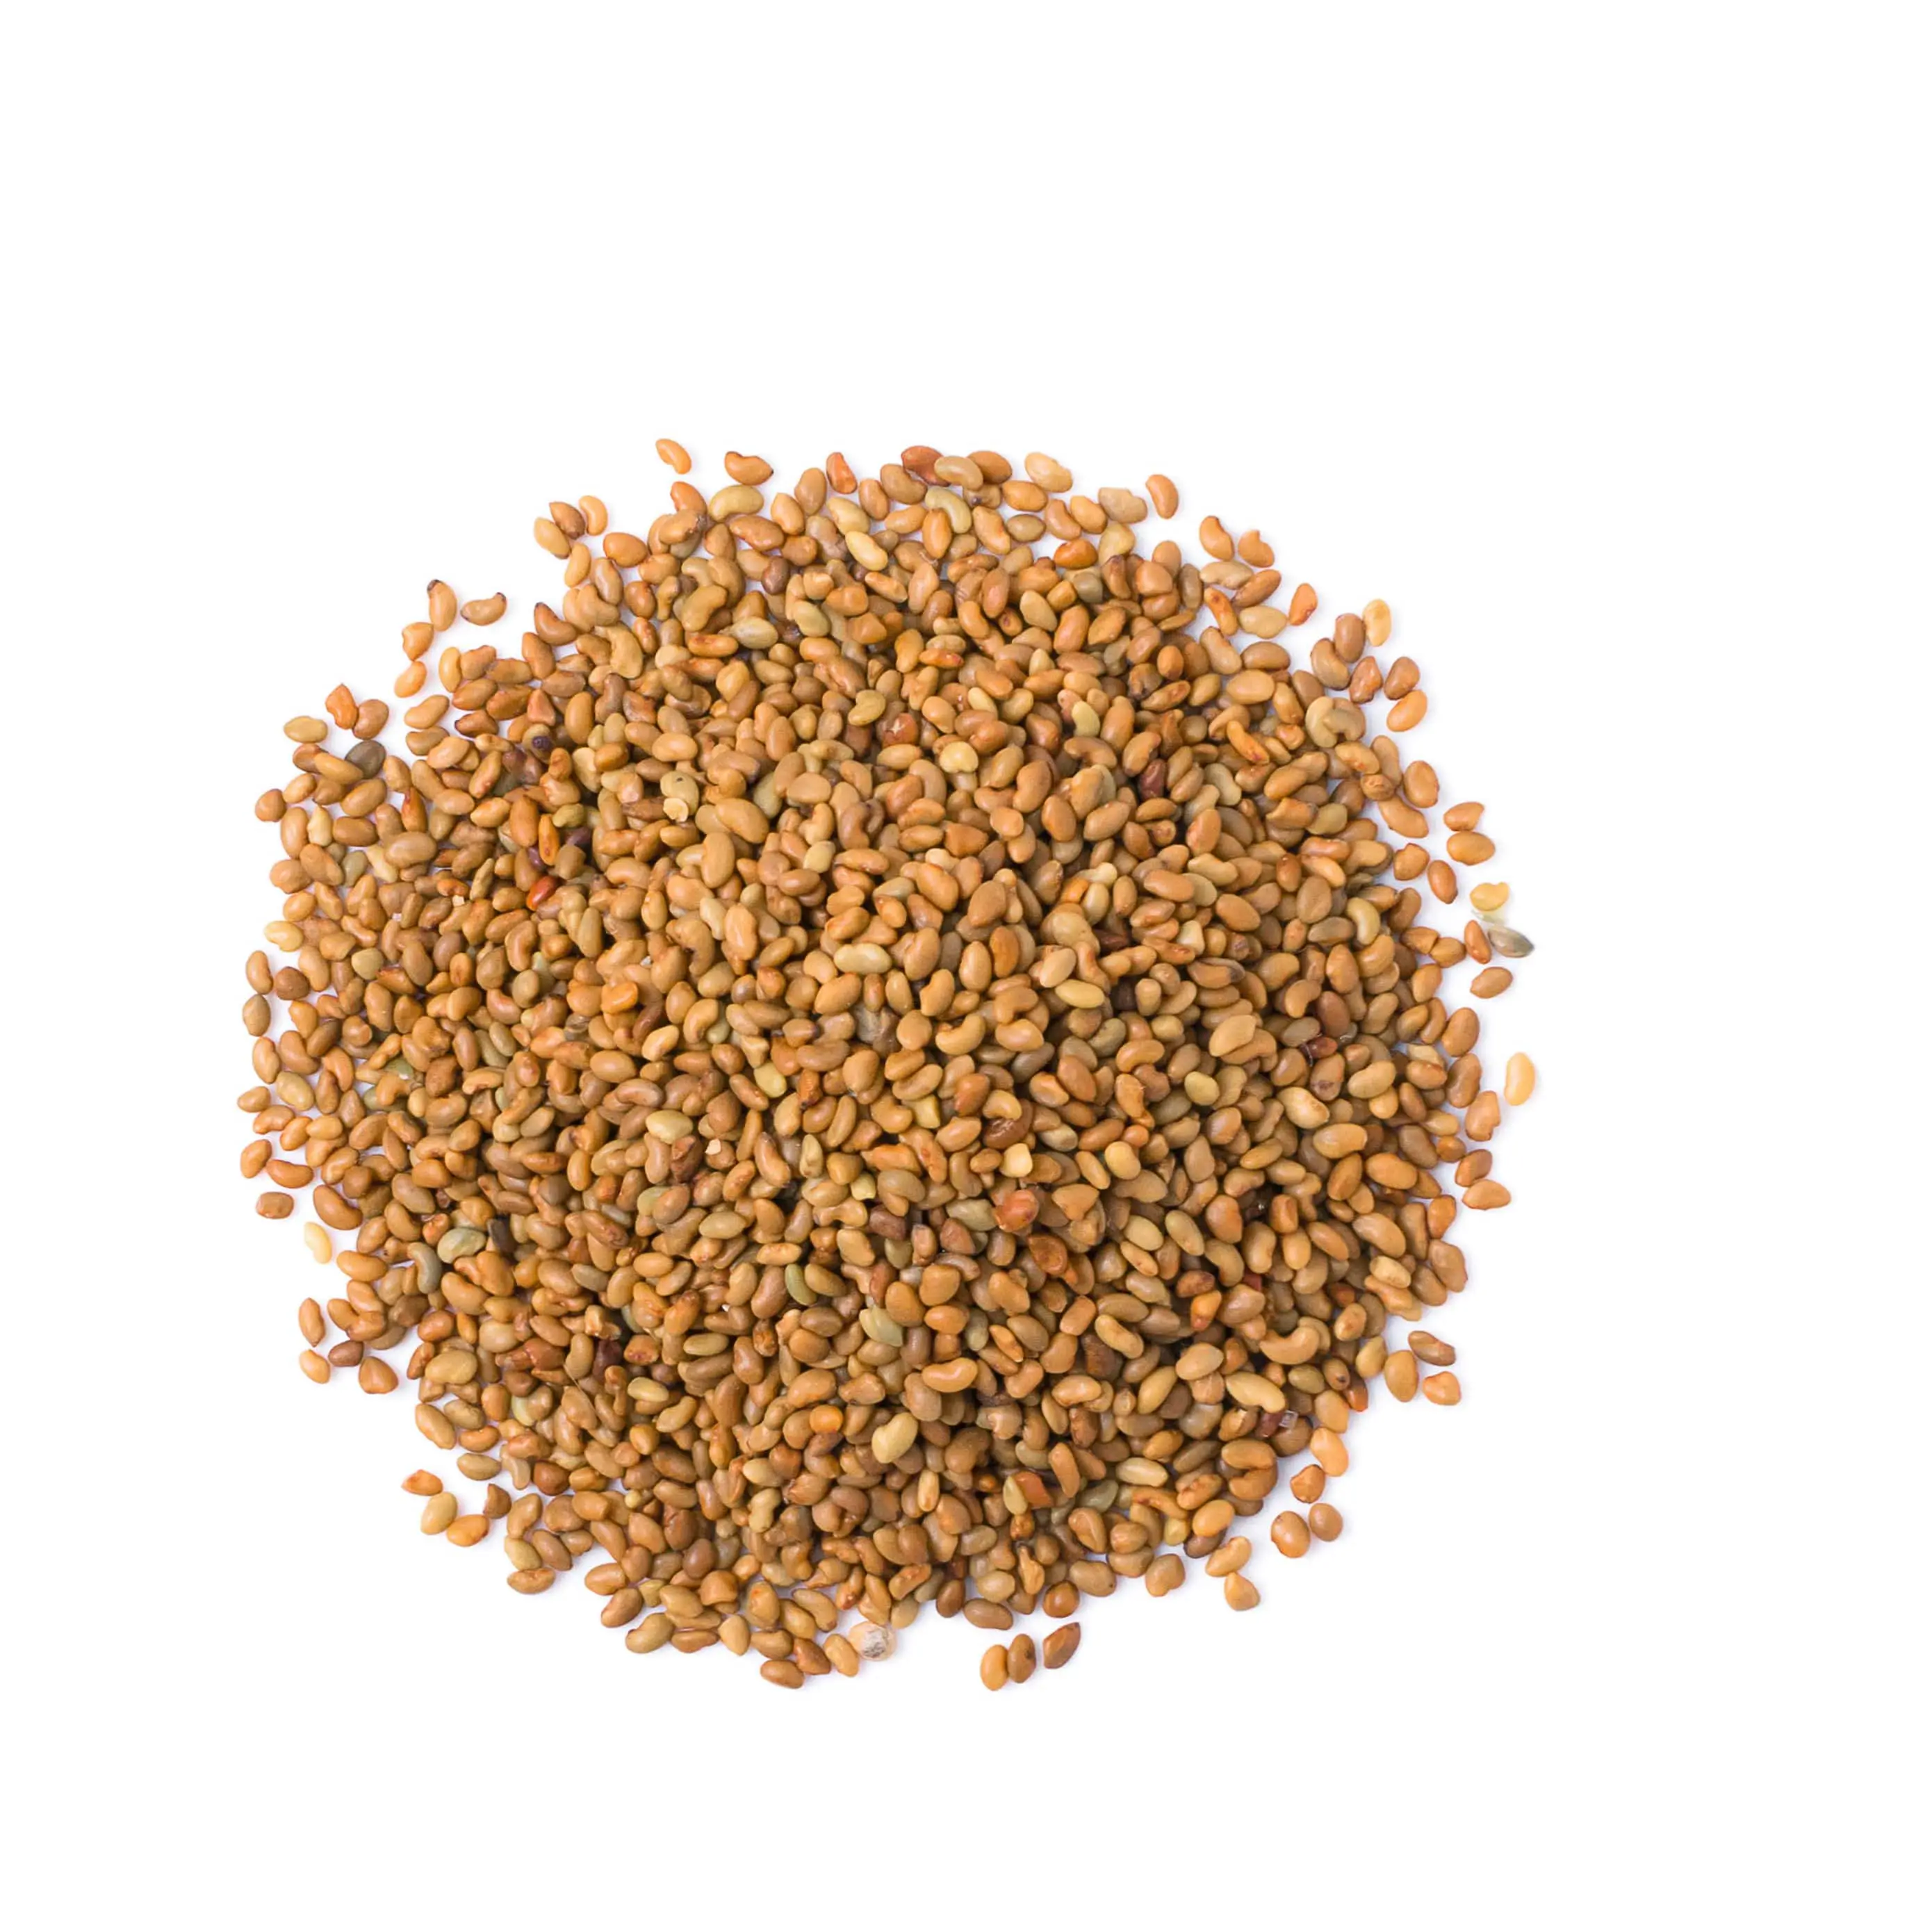 Melhor qualidade alfafa semente para venda a preço barato